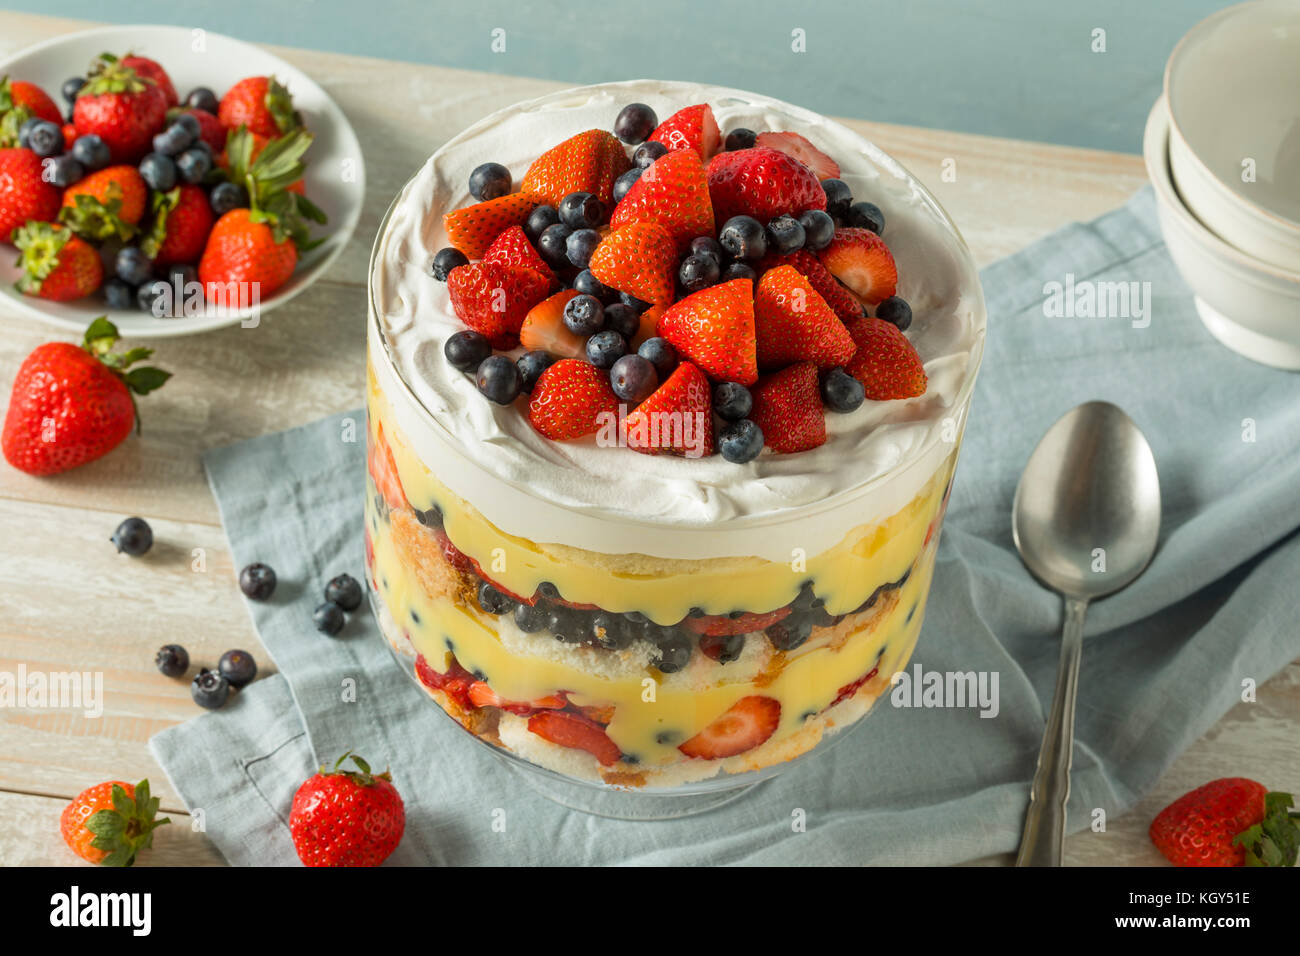 Bagatelle aux fraises un dessert fait maison doux avec de la crème anglaise et gâteau Banque D'Images